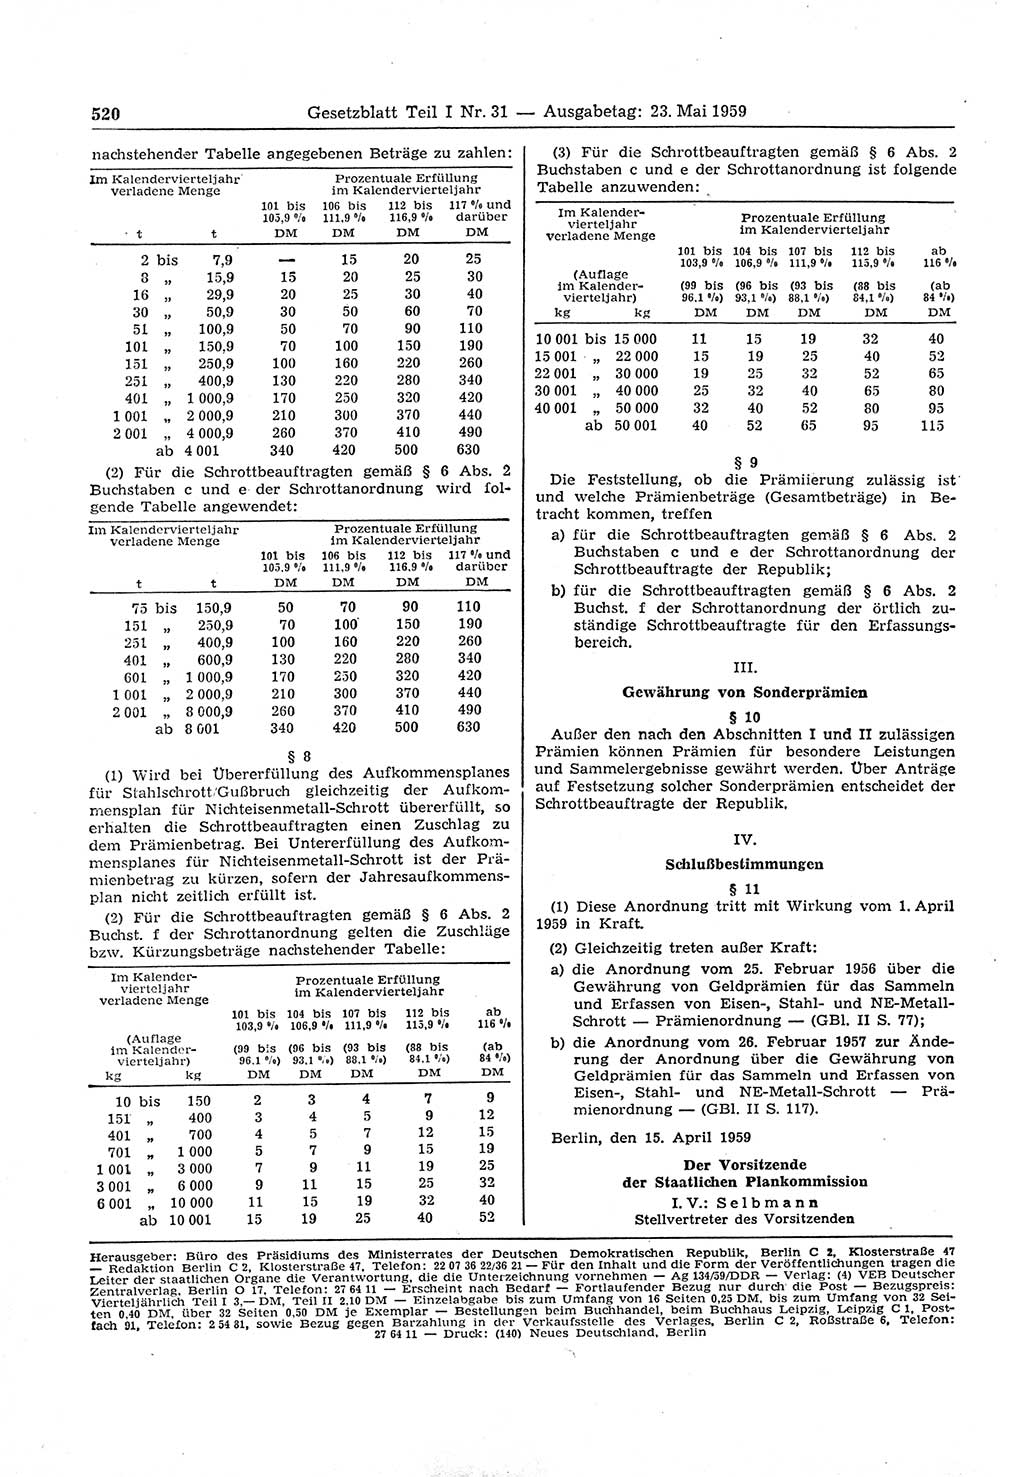 Gesetzblatt (GBl.) der Deutschen Demokratischen Republik (DDR) Teil Ⅰ 1959, Seite 520 (GBl. DDR Ⅰ 1959, S. 520)